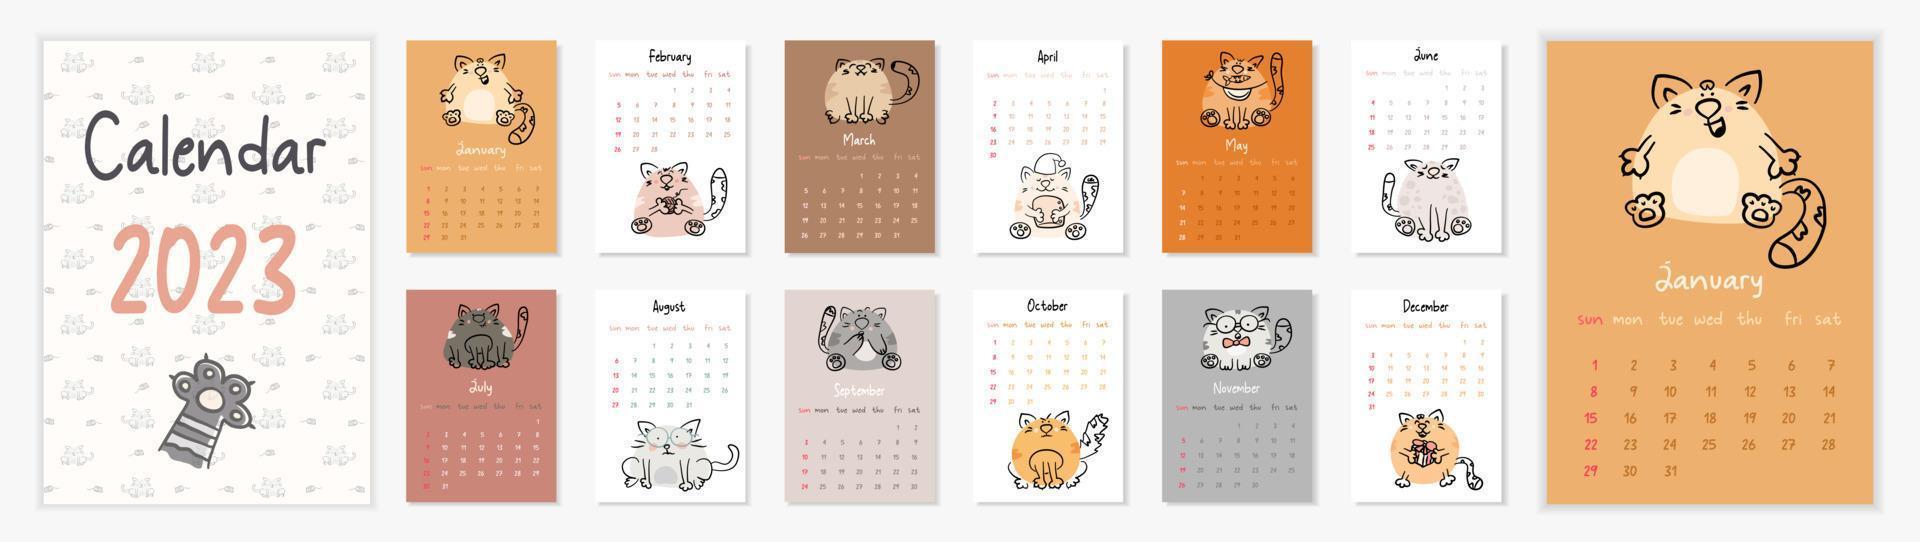 calendrier vectoriel vertical 2023 avec des chats de dessin animé dessinés à la main. couverture illustrée et pages de 12 mois avec des animaux amusants. la semaine commence le dimanche. pour la taille a4,a5,a3.